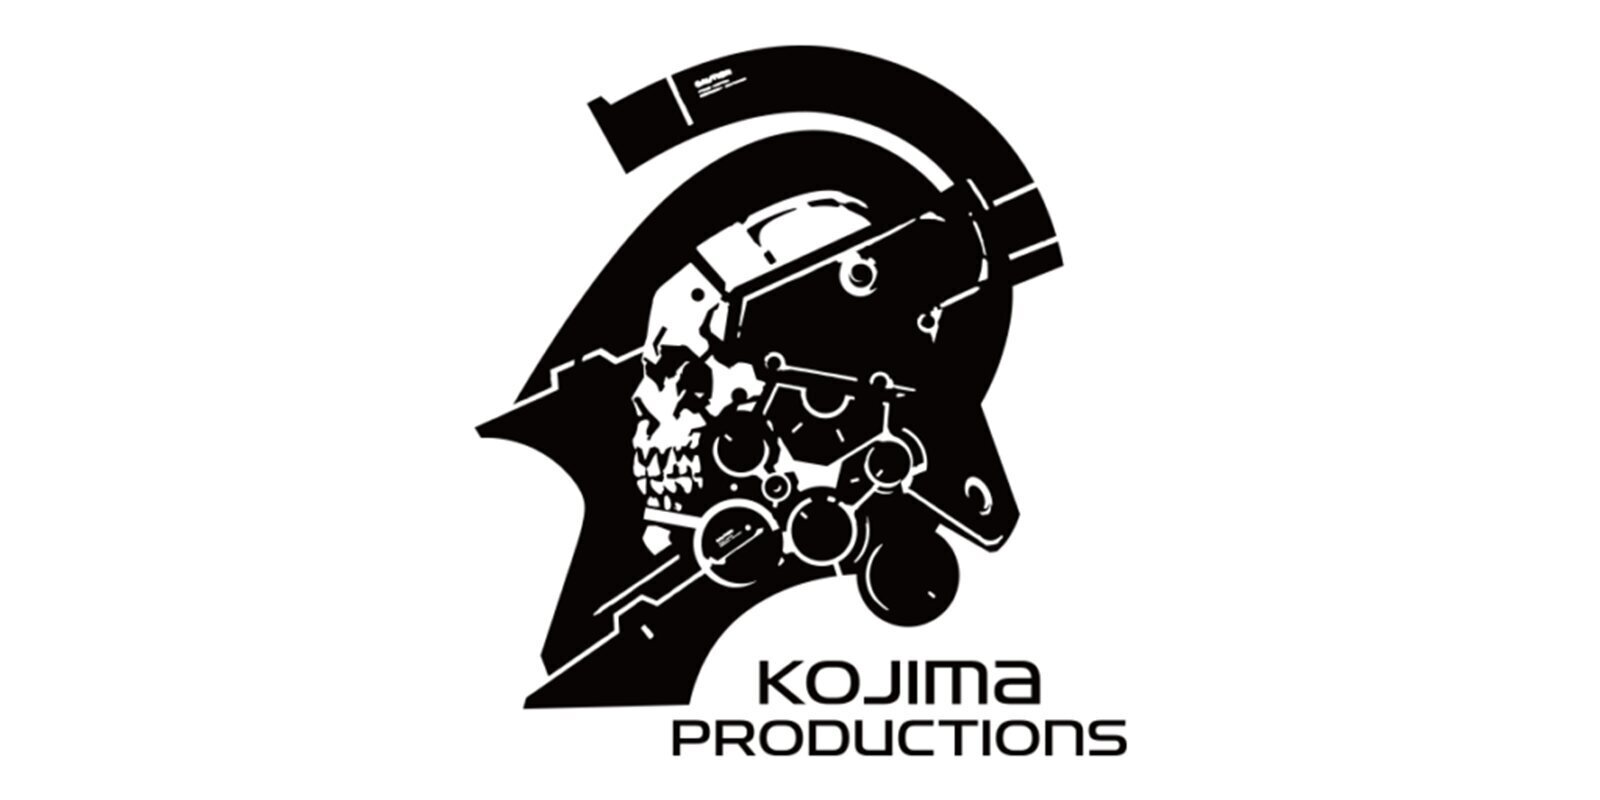 Sony podría haber comprado Kojima Productions según rumores